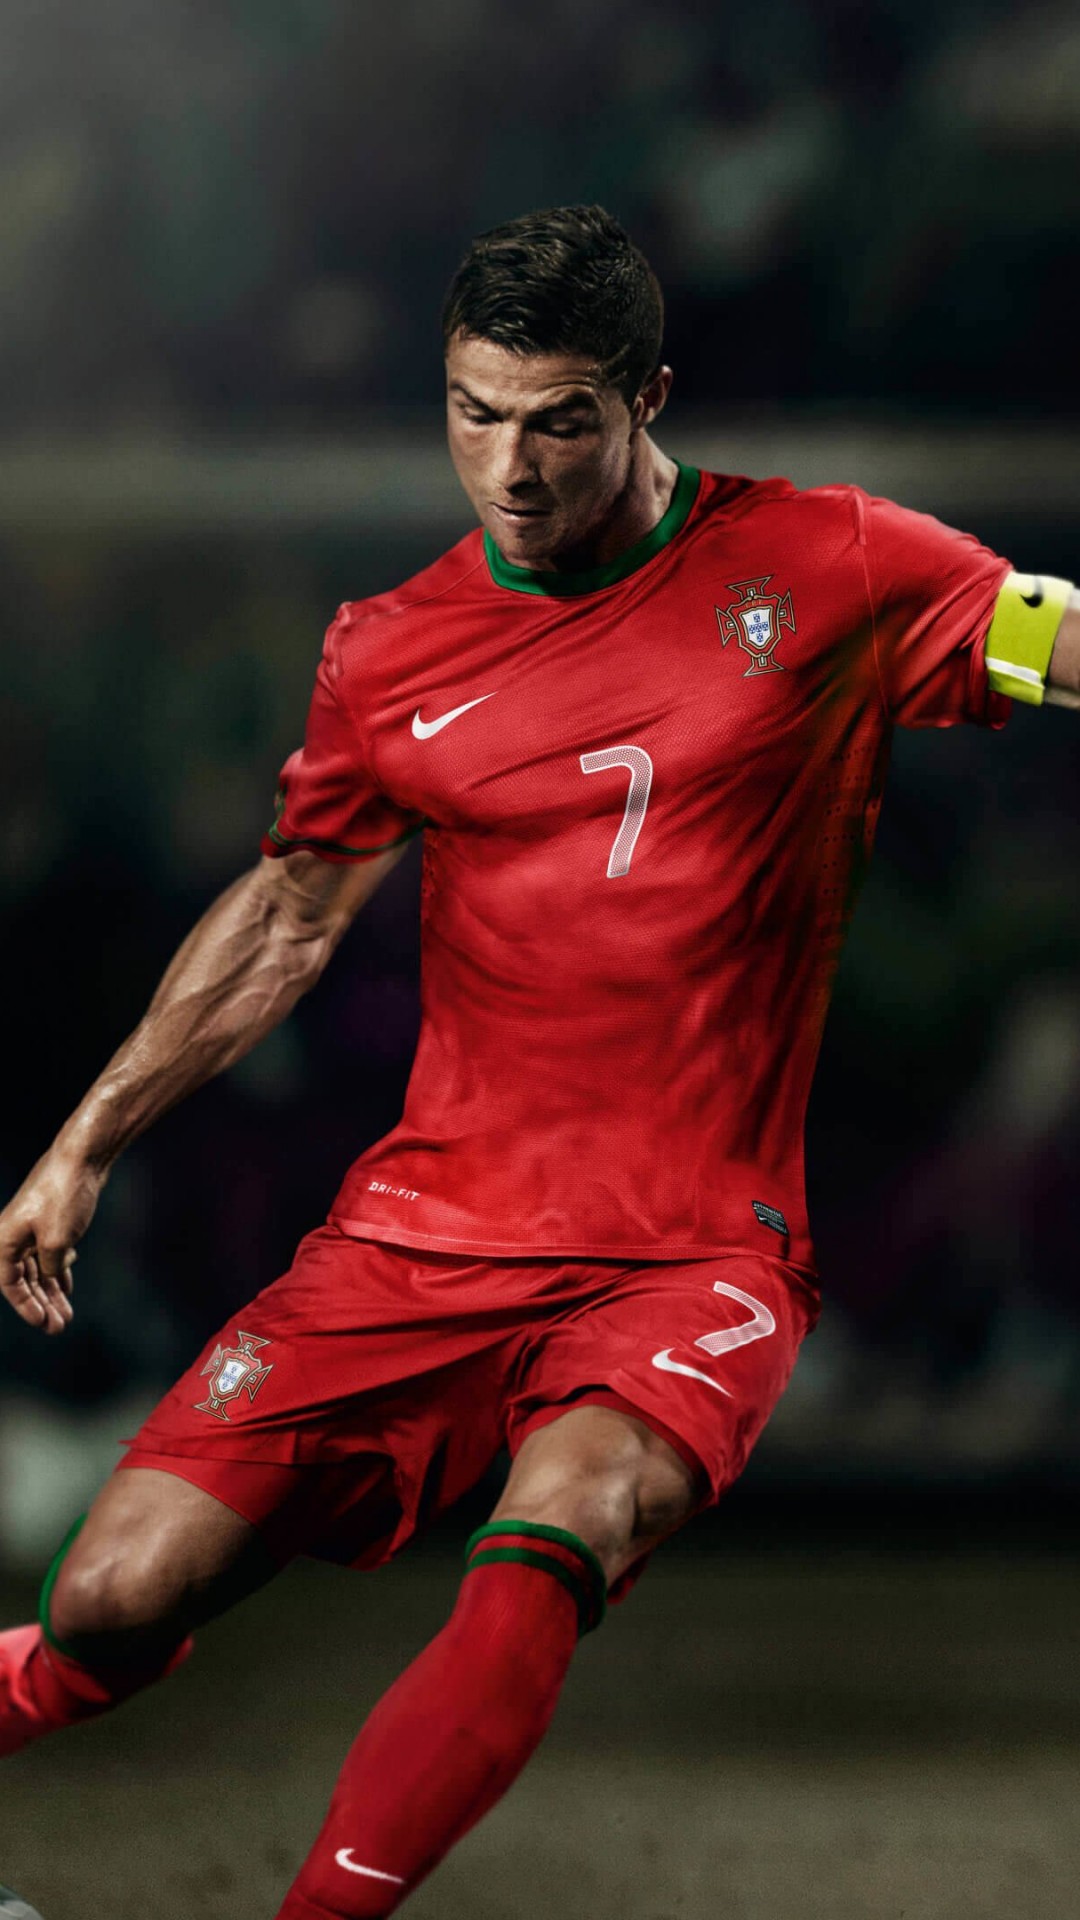 Cristiano Ronaldo In Portugal Jersey Wallpaper for Google Nexus 5X